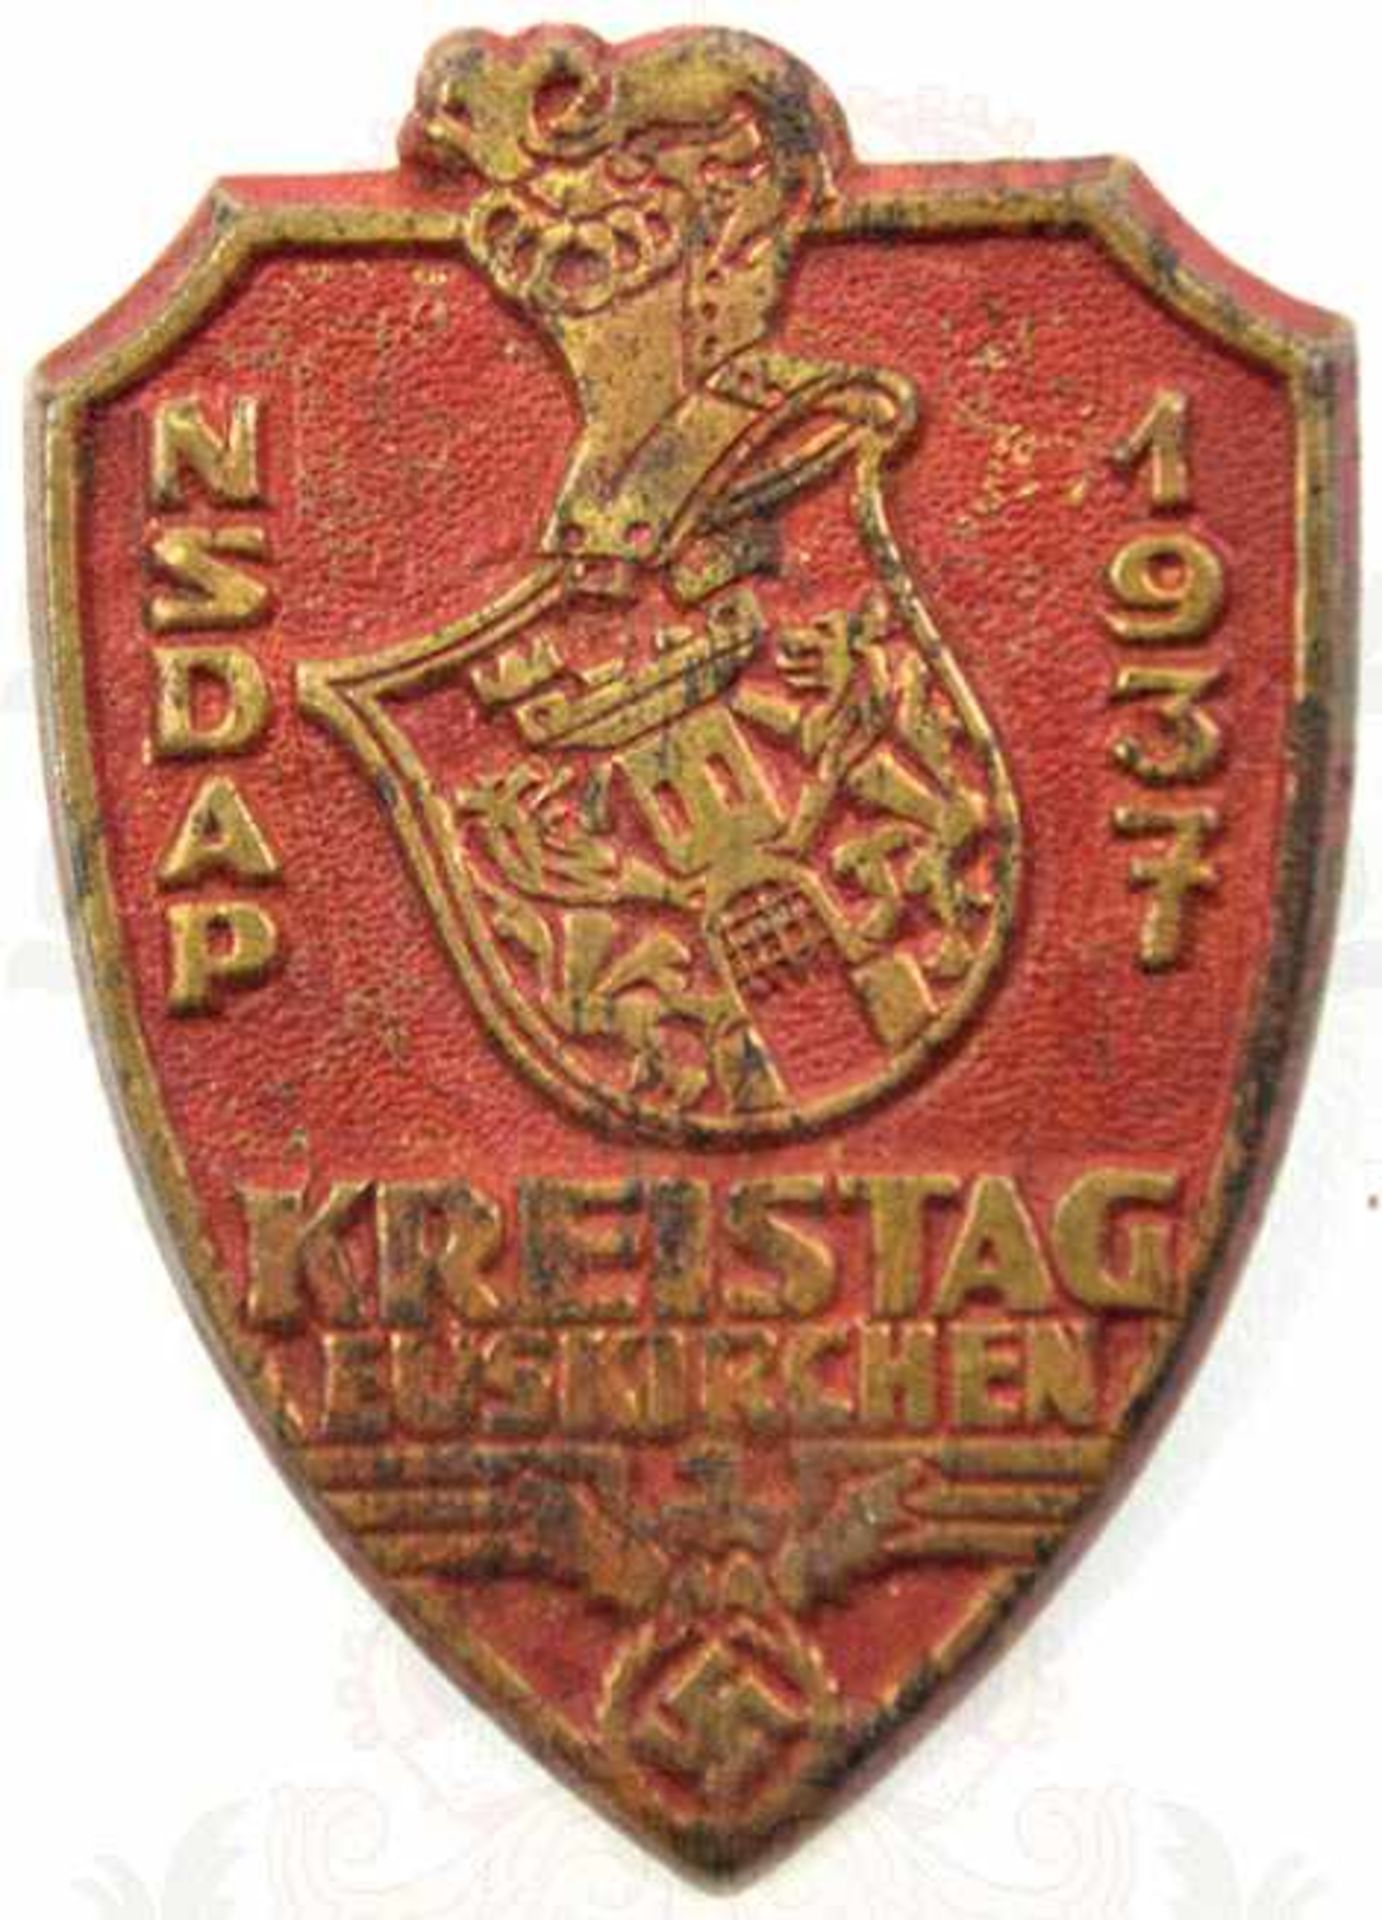 NSDAP-KREISTAG EUSKIRCHEN 1937, Buntmetall, rot lackiert, Quernadel